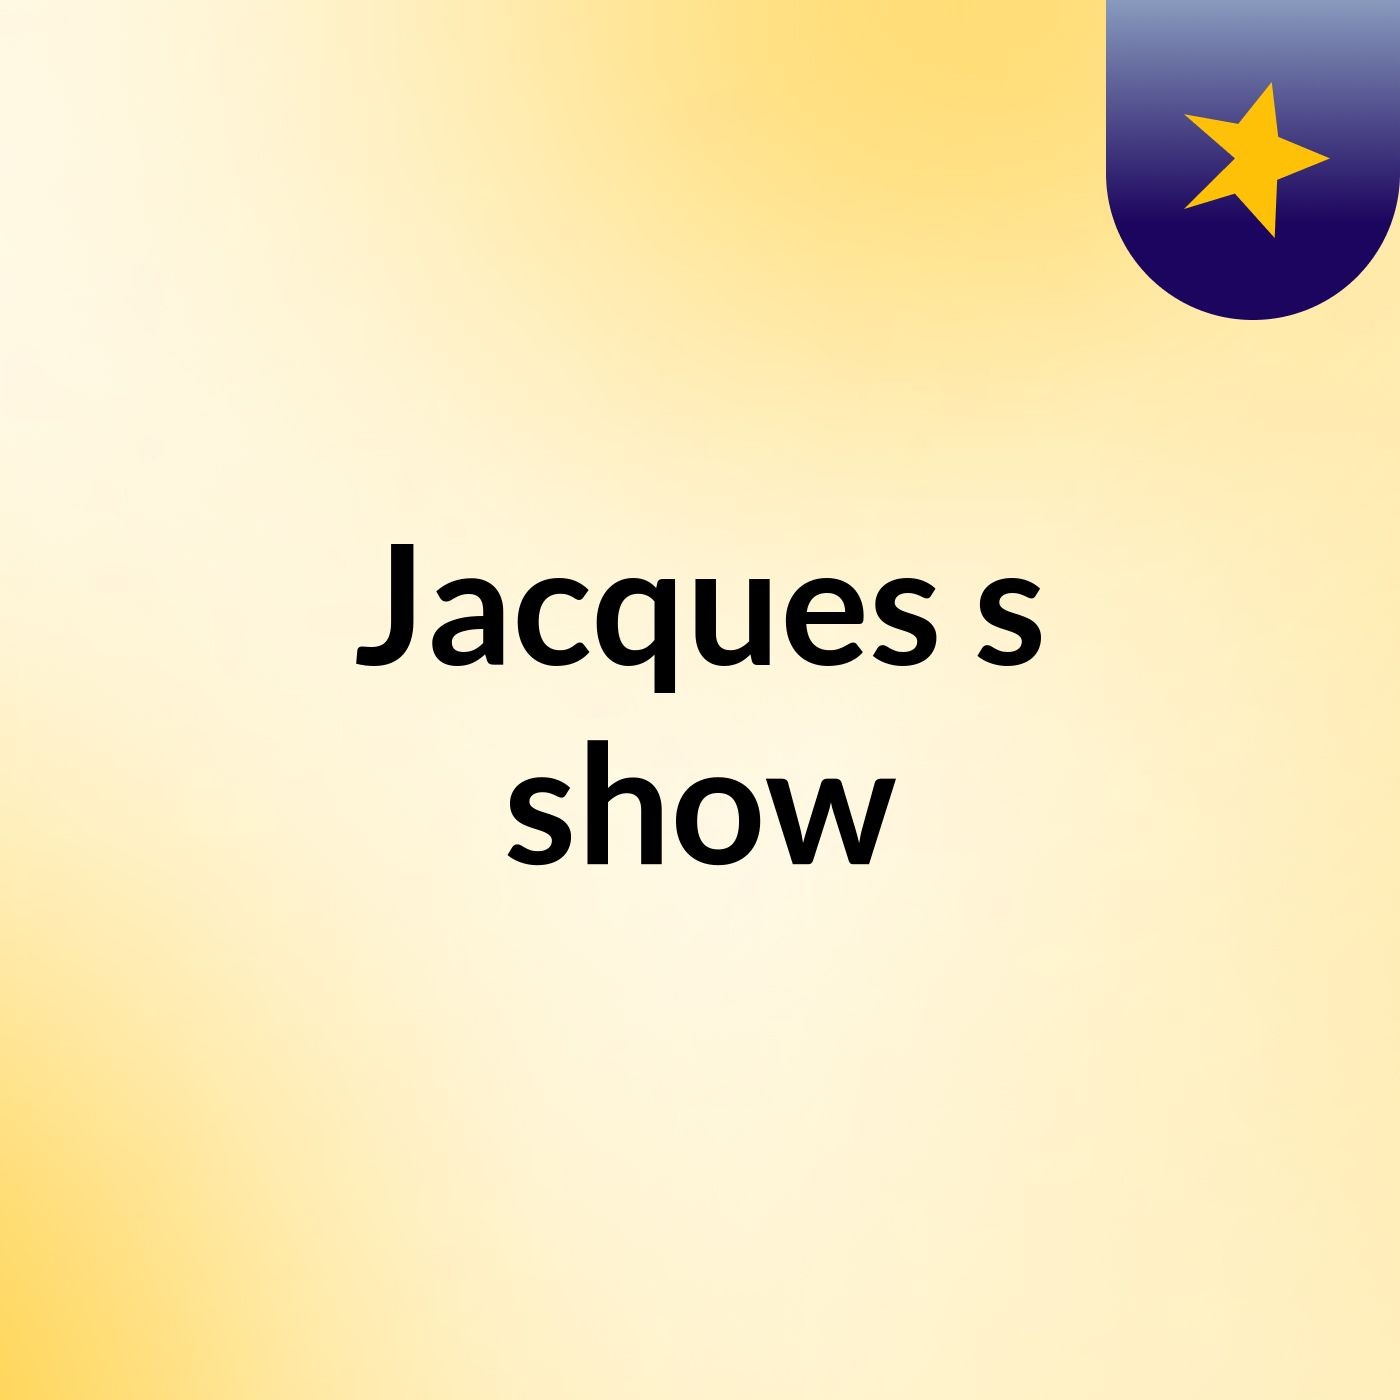 Jacques's show